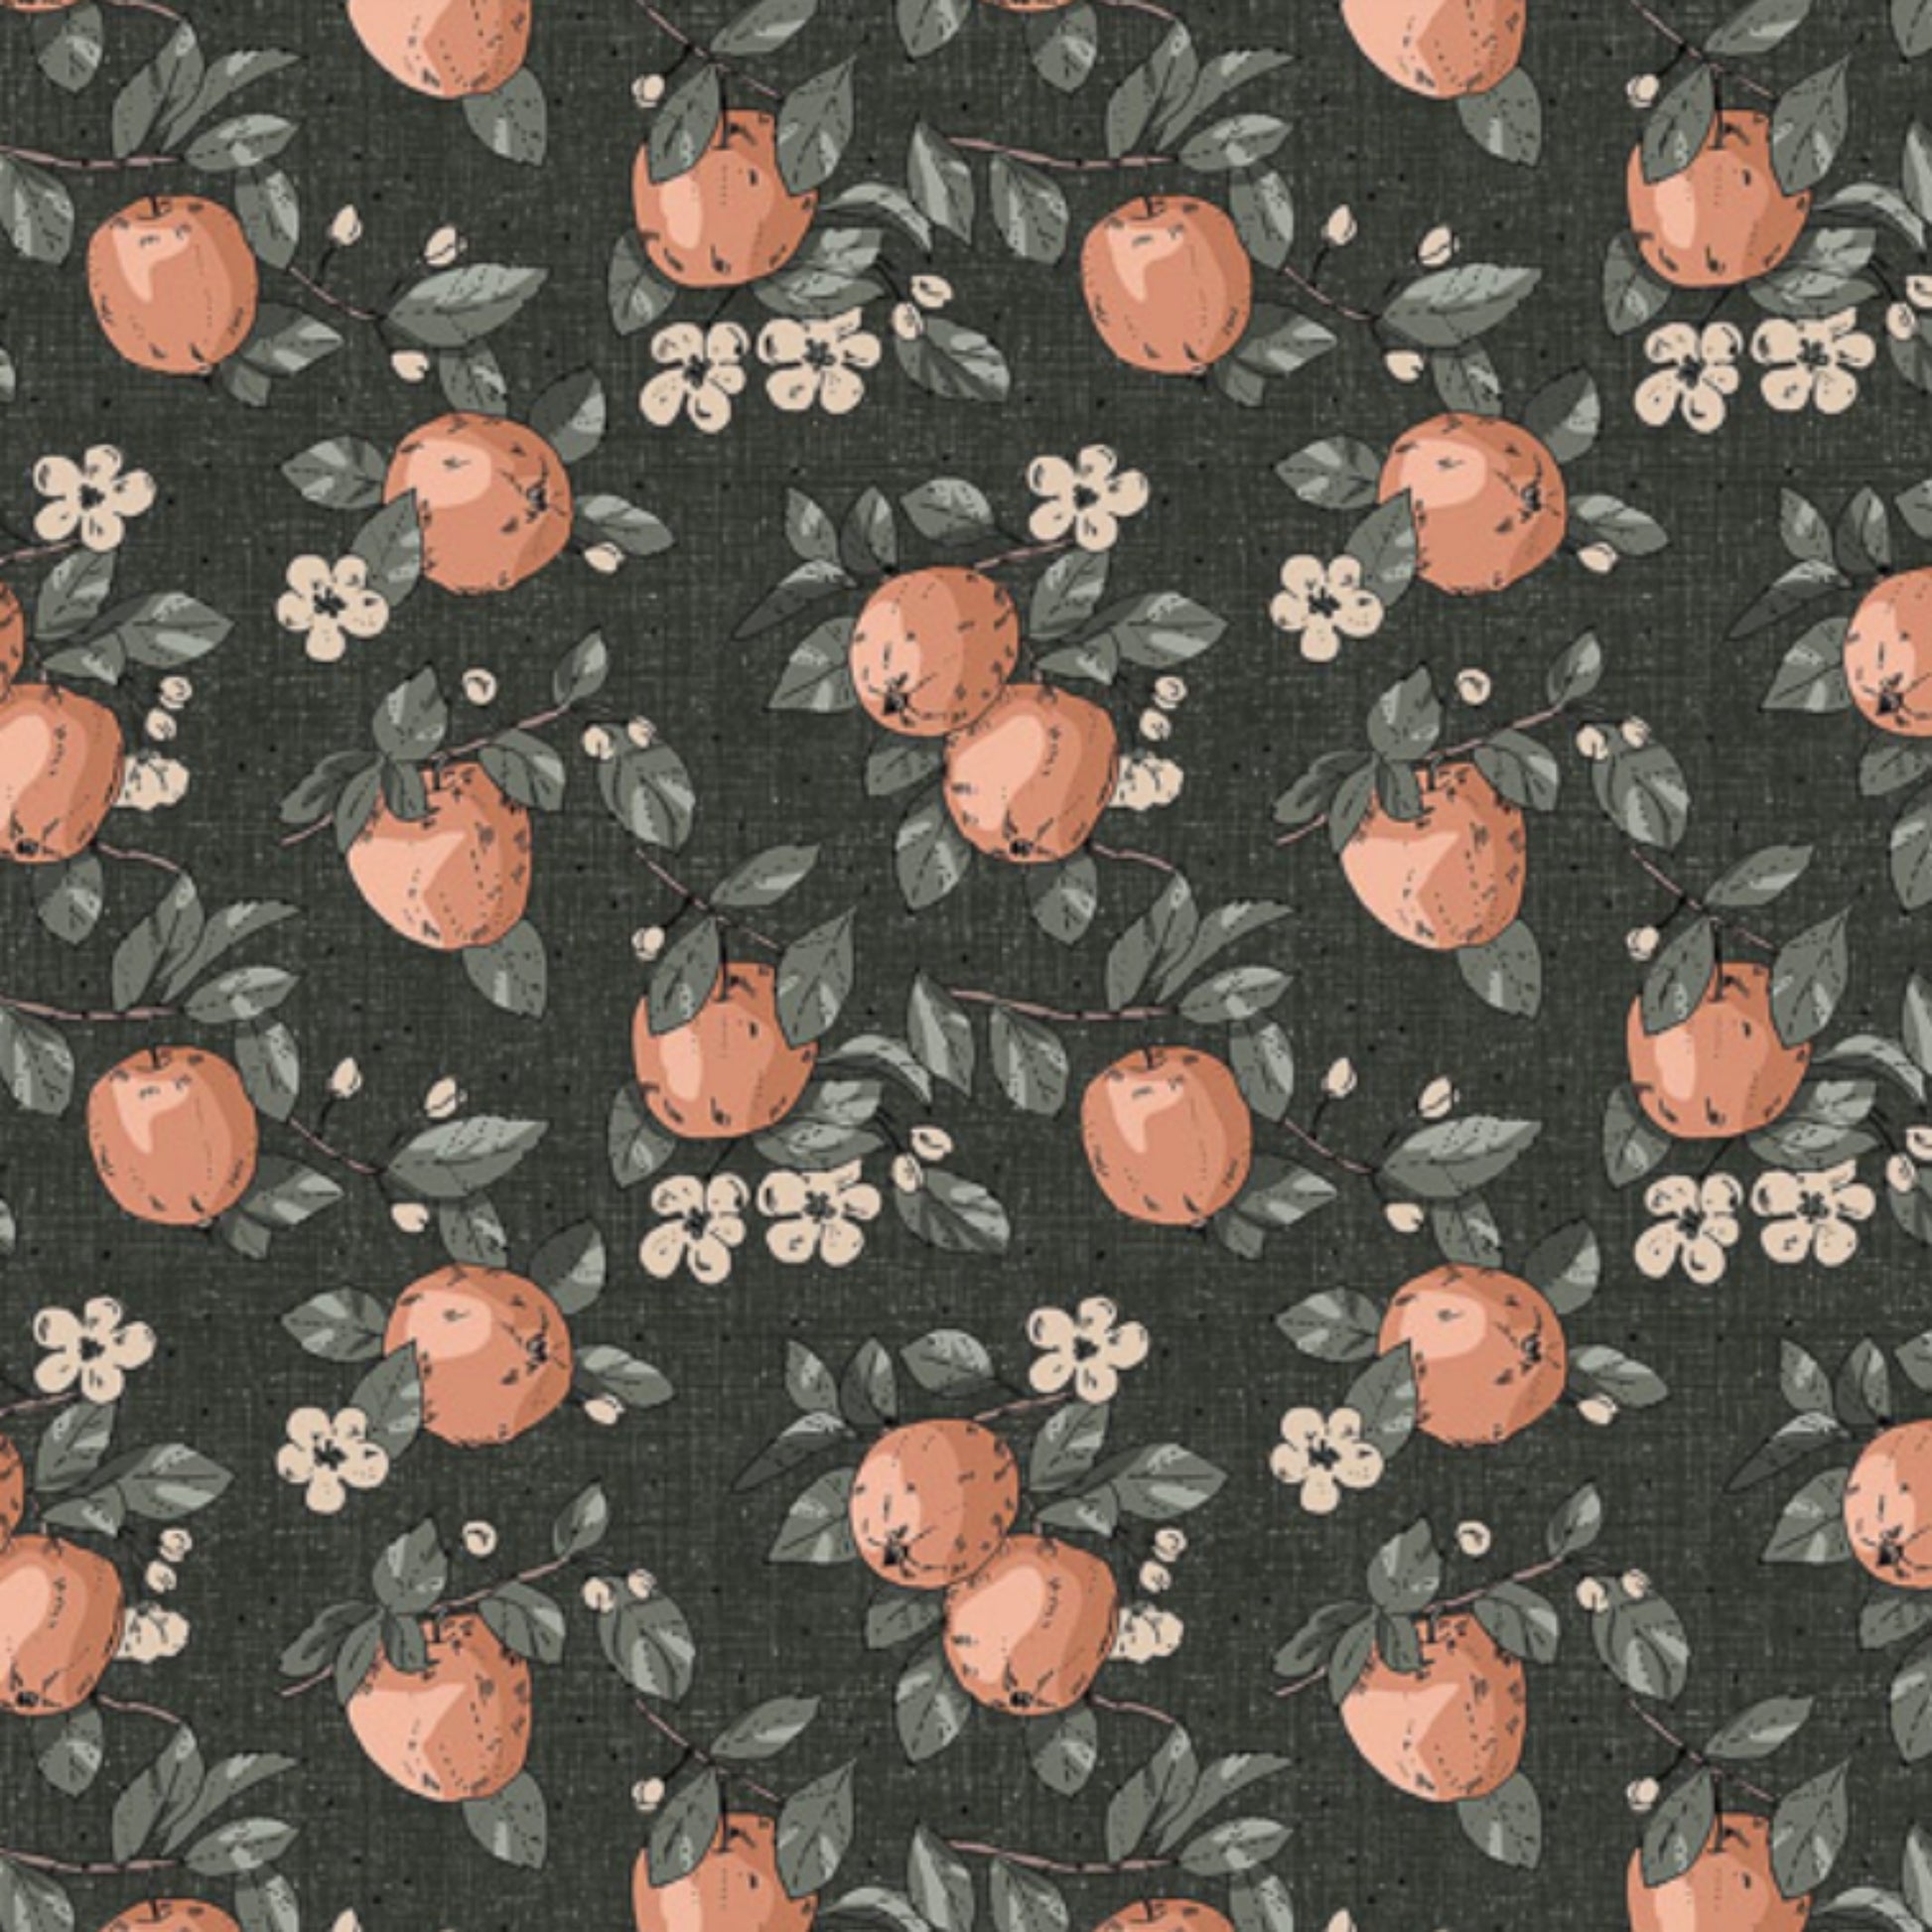 Apples in Spruce - Klara Collection by Bernaett Urbanovics for Figo Fabrics